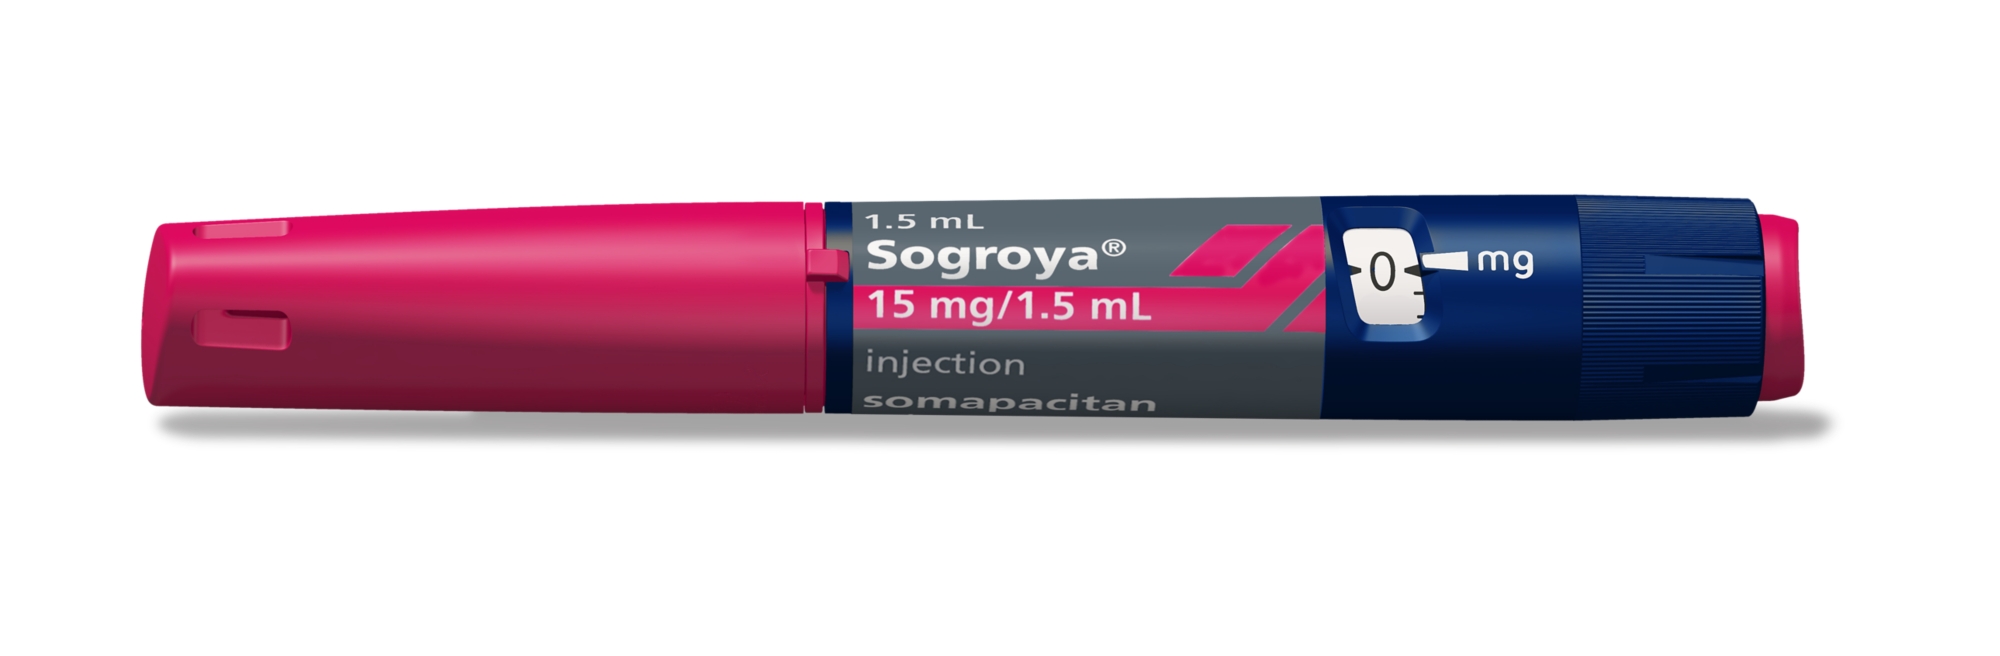 Sogroya pen 15 mg/1.5 mL